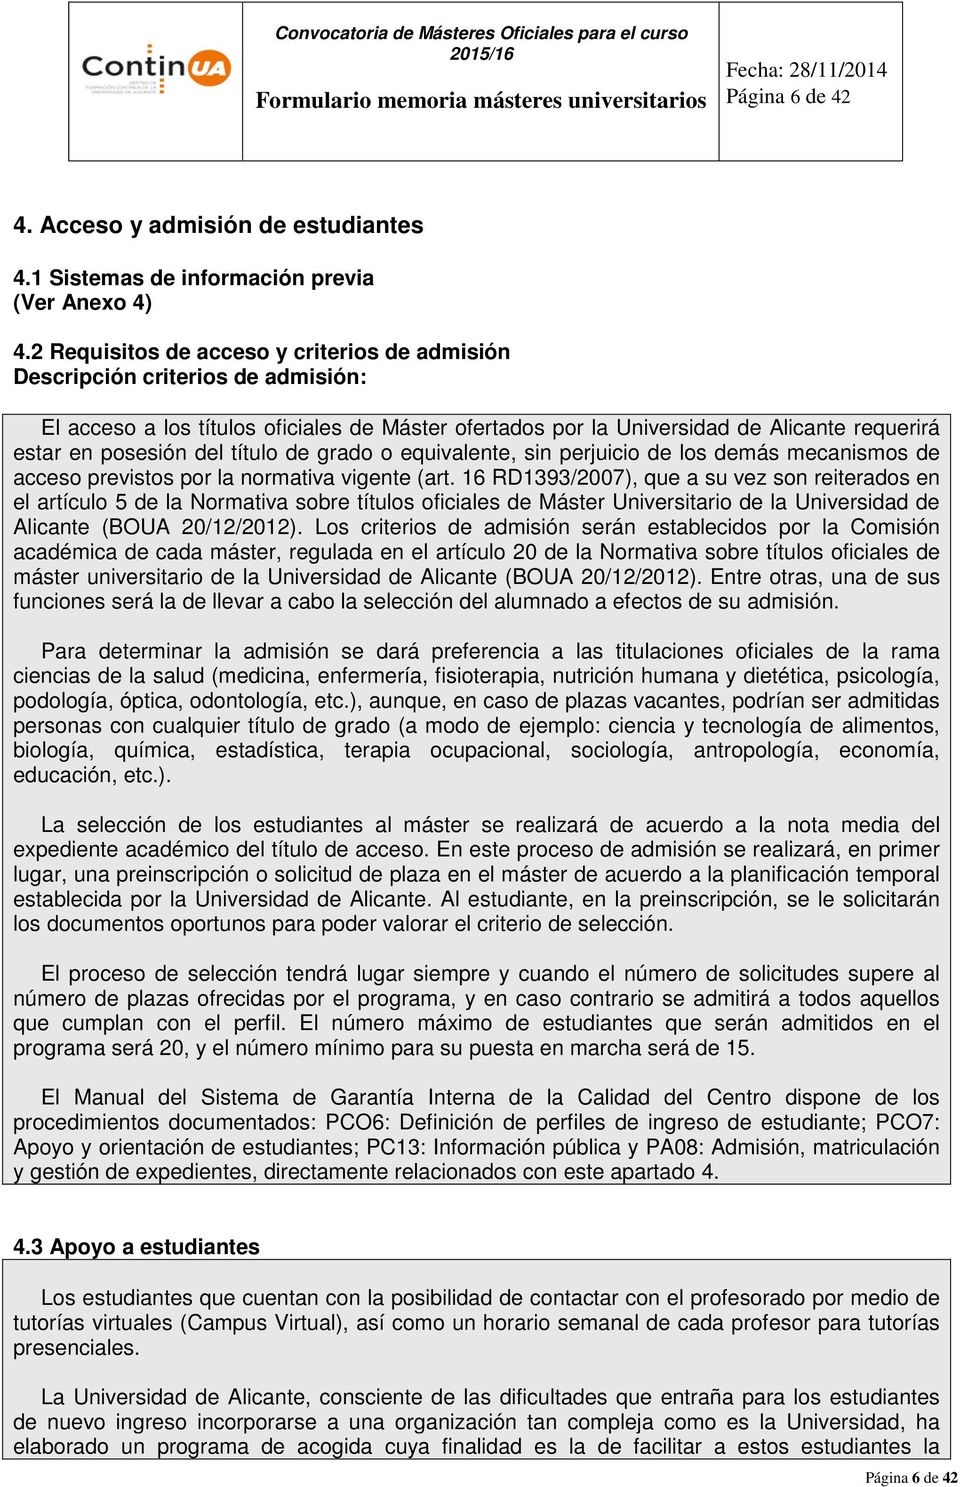 2 Requisitos de acceso y criterios de admisión Descripción criterios de admisión: El acceso a los títulos oficiales de Máster ofertados por la Universidad de Alicante requerirá estar en posesión del